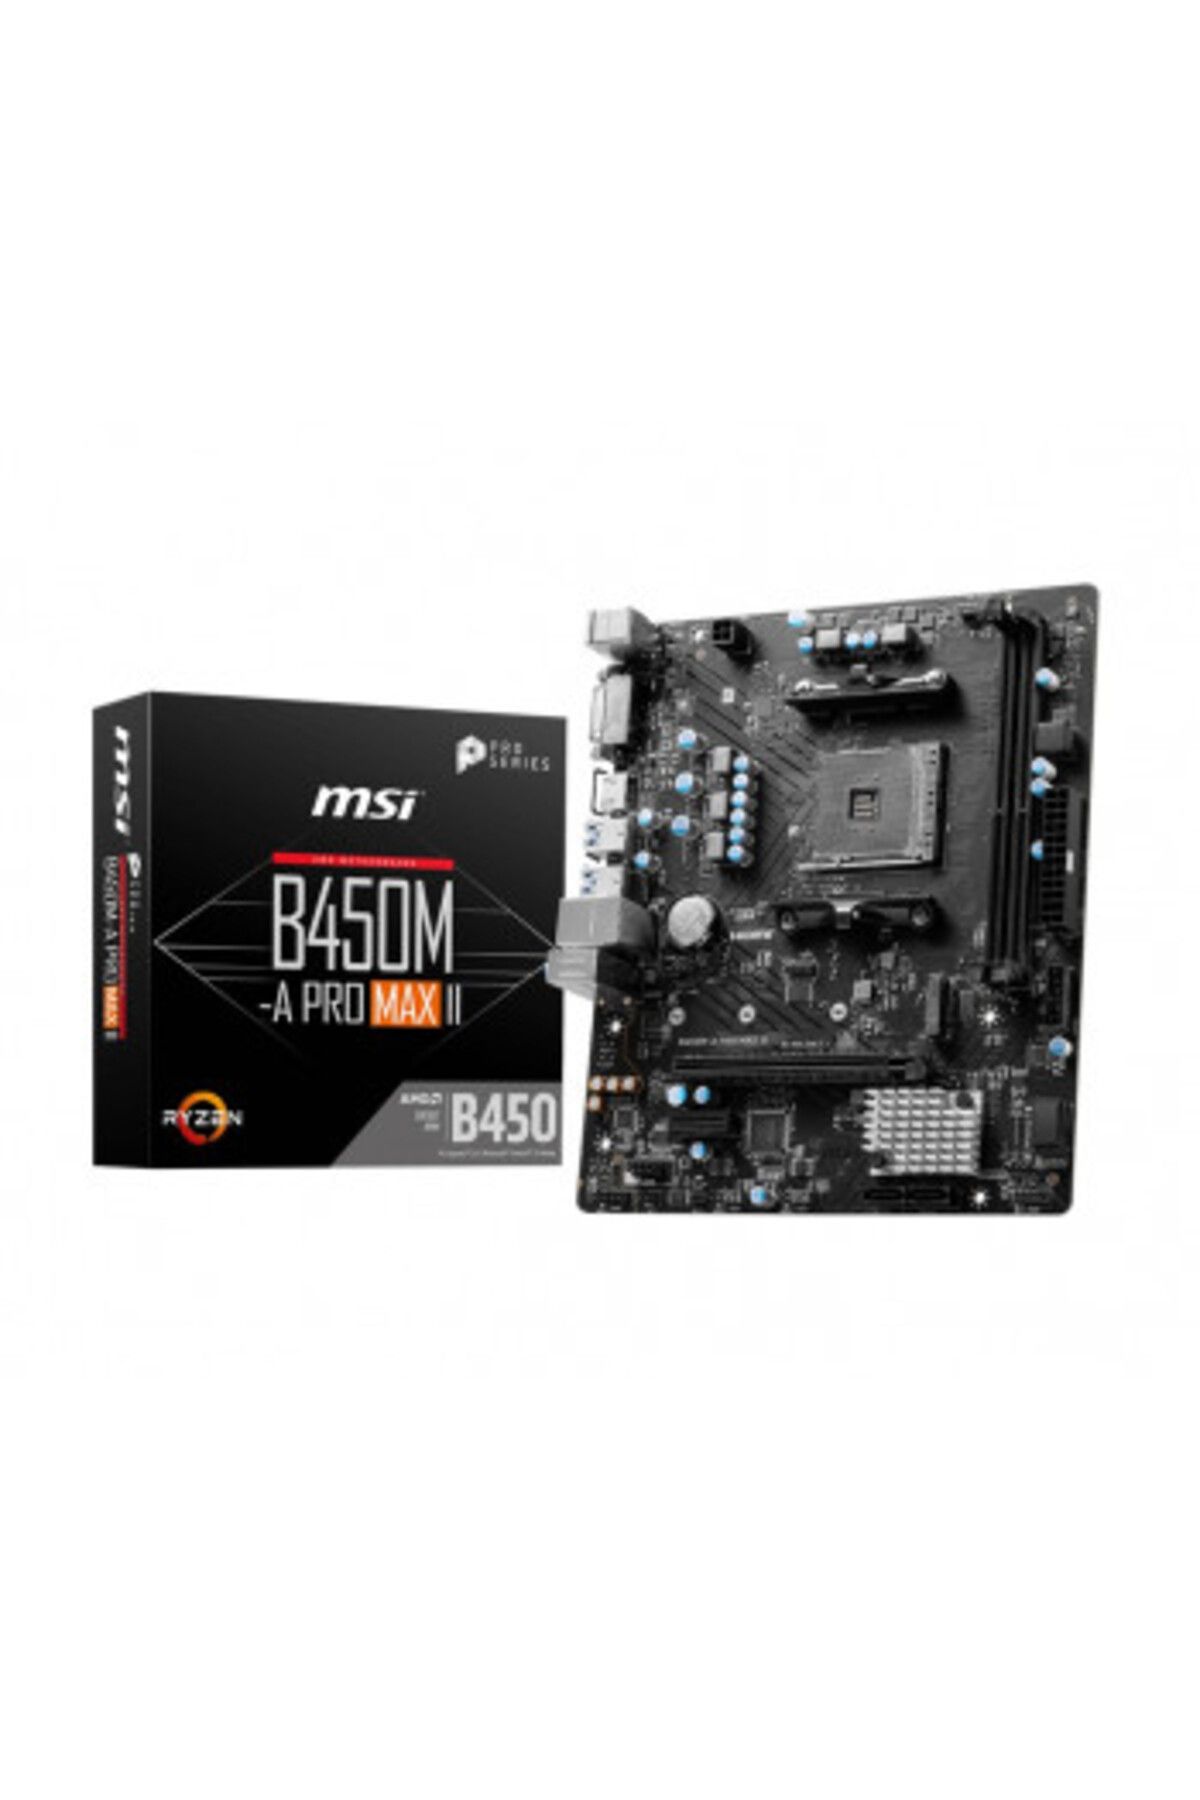 MSI B450M-A PRO MAX II AMD DDR4 4133Mhz(OC) MATX AM4